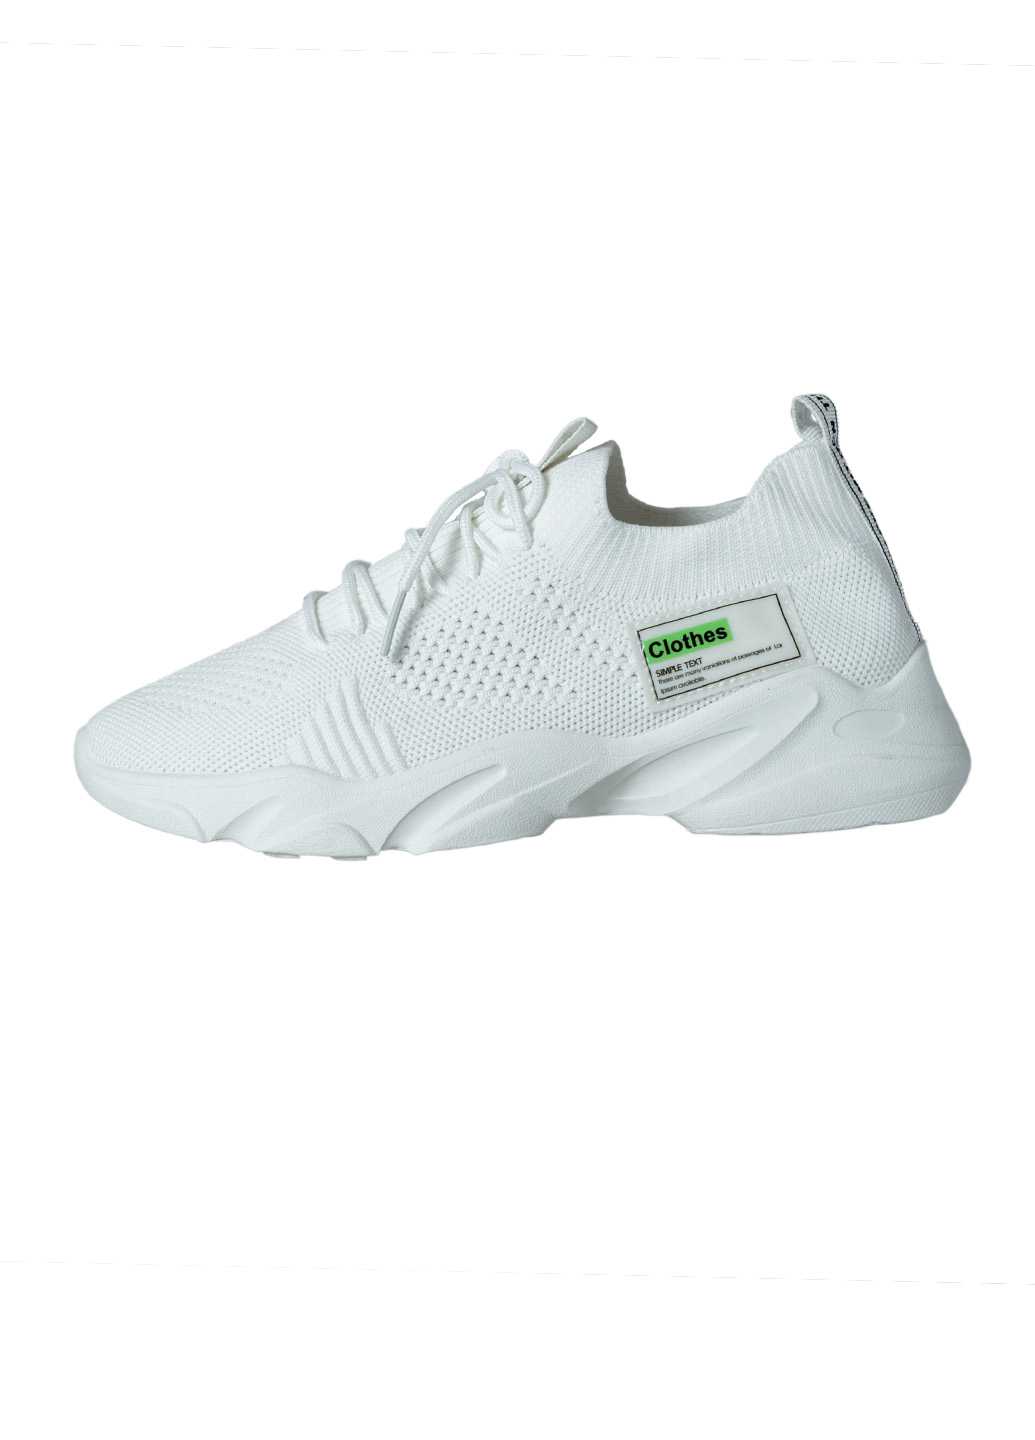 Жіночі кросівки Lifexpert білого кольору із текстилю на шнурку